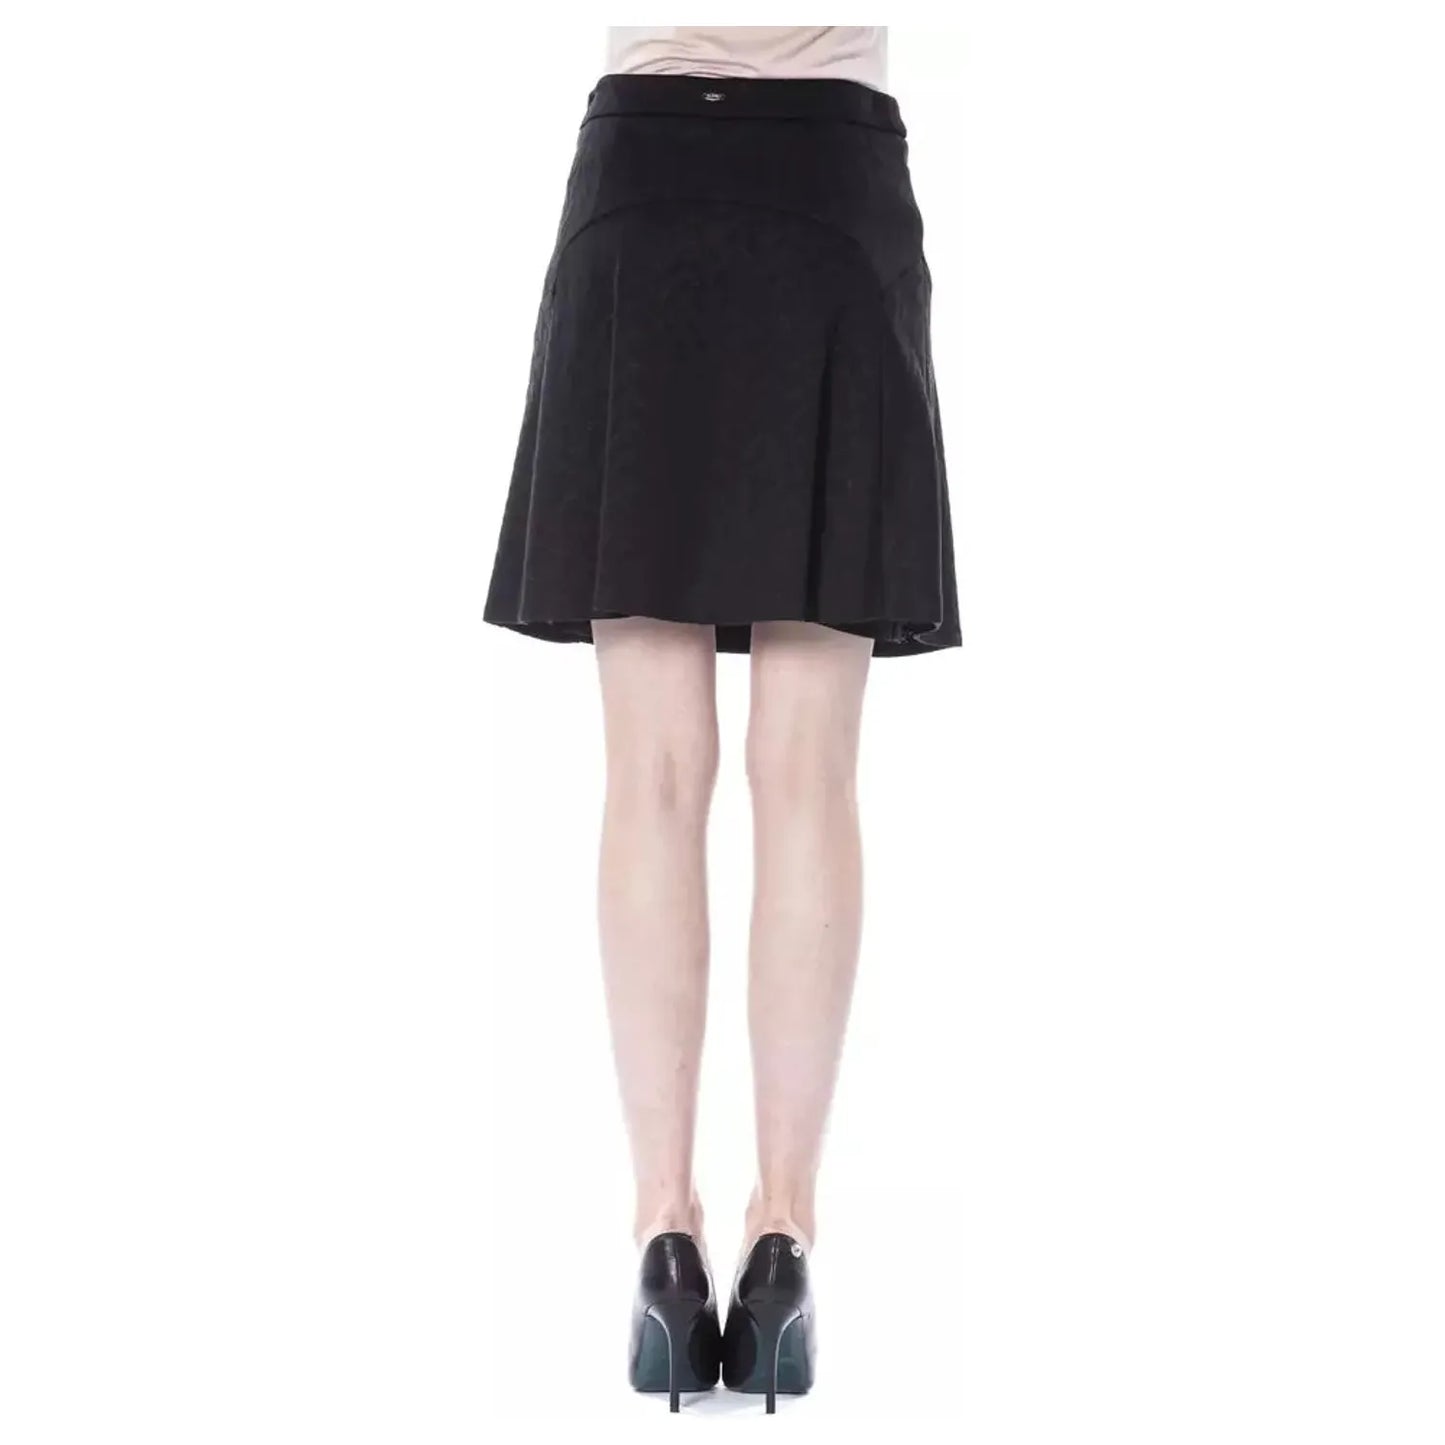 BYBLOS Elegant Black Tube Skirt for Sophisticated Evenings WOMAN SKIRTS black-polyester-skirt-5